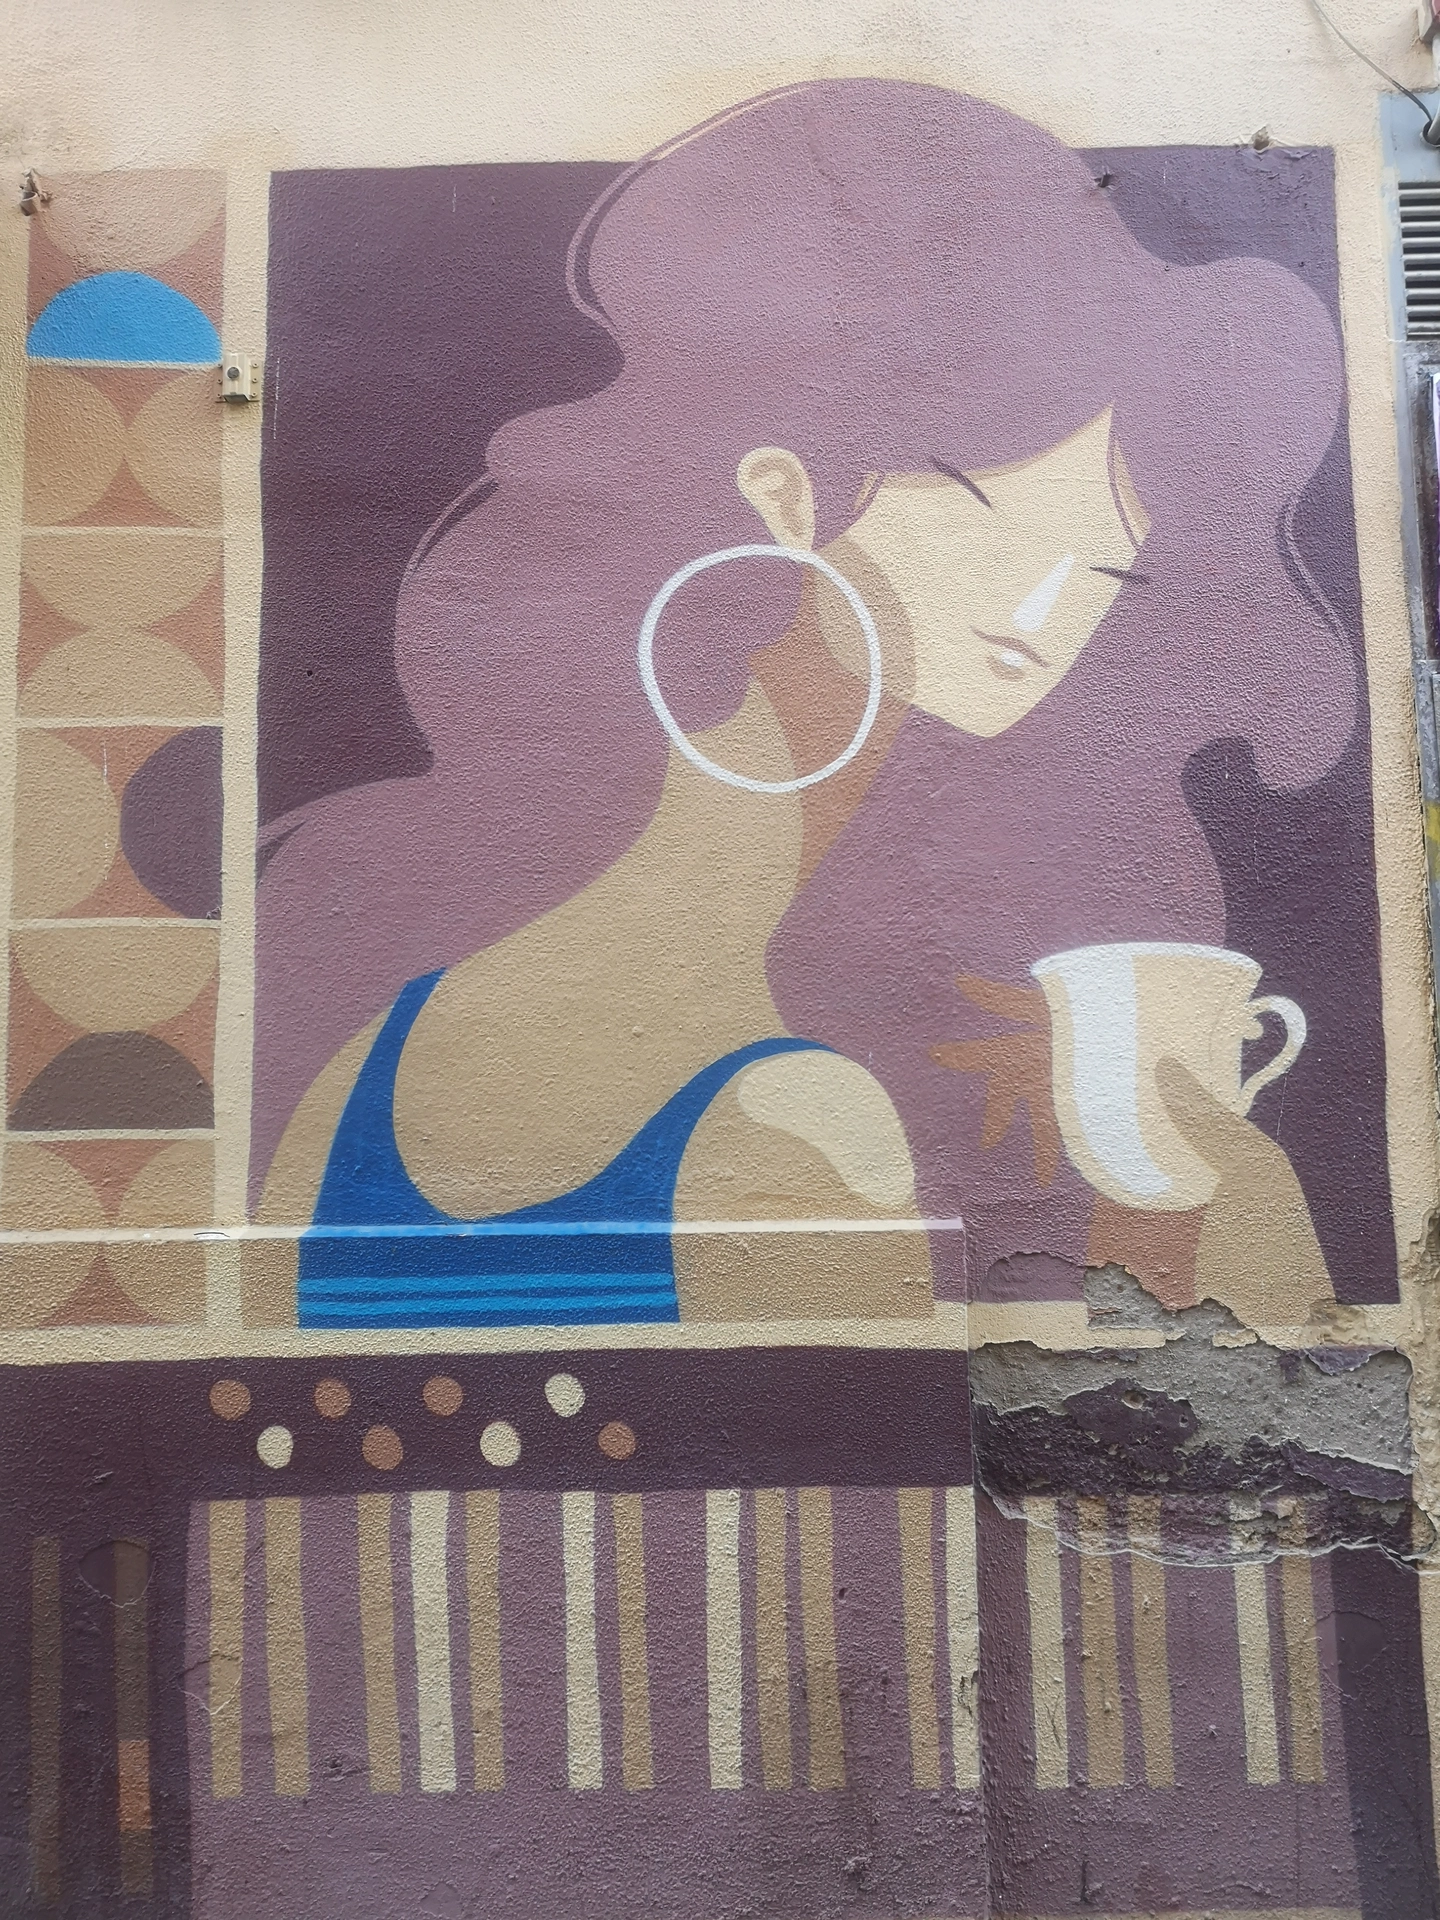 Oeuvre de Street Art à Seville